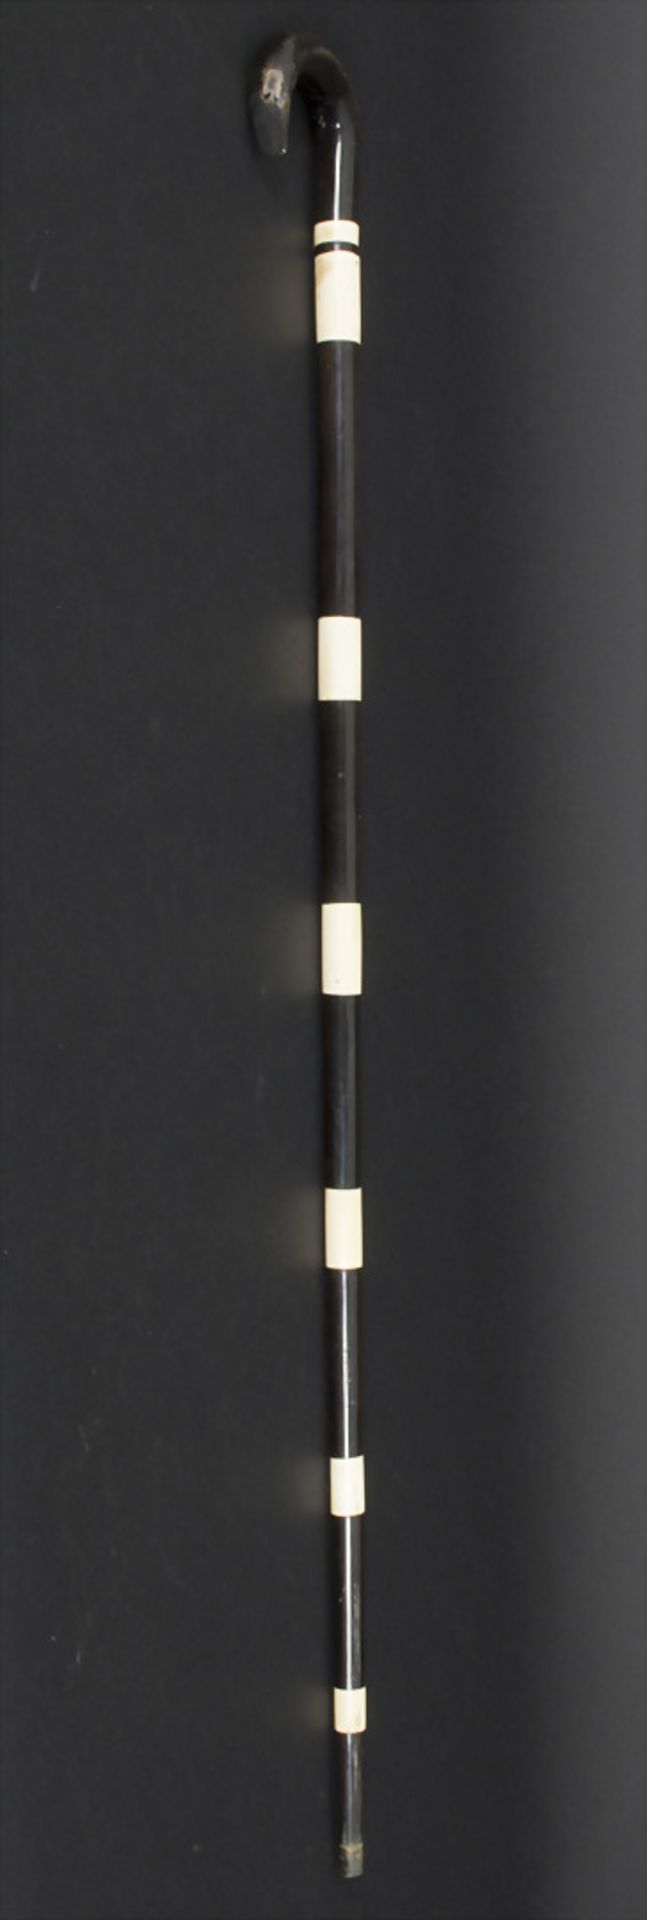 Gehstock mit Schwarz-Weiß-Dekor / A cane with black and white patterns, um 1900Material: Horn, - Bild 5 aus 5